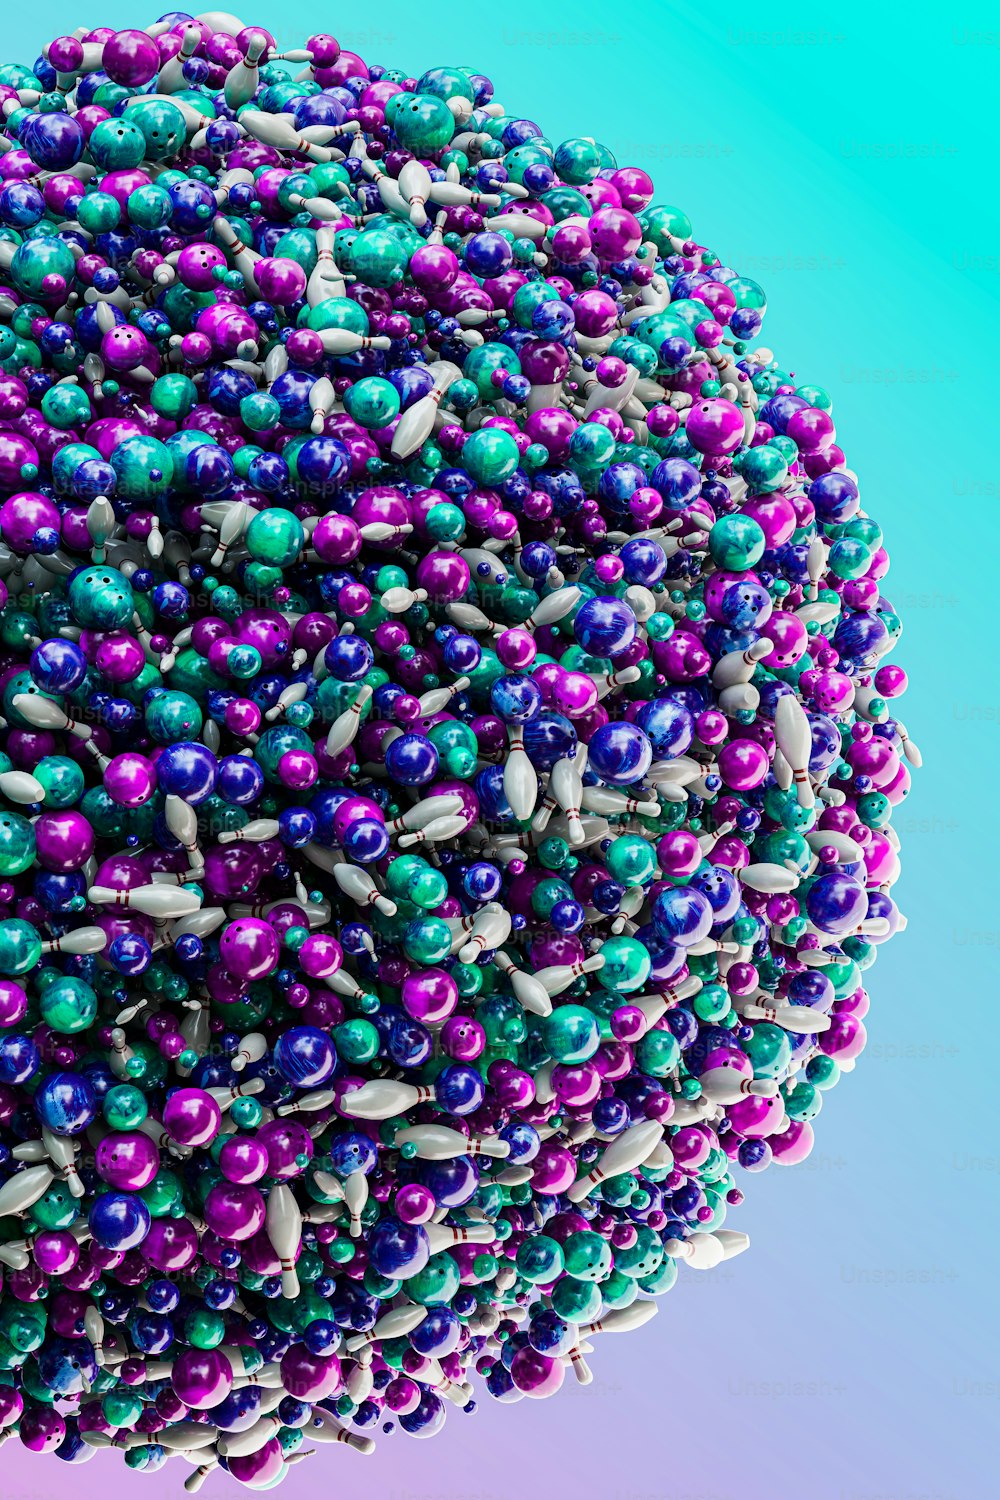 Un primo piano di una palla di perline su uno sfondo blu e viola